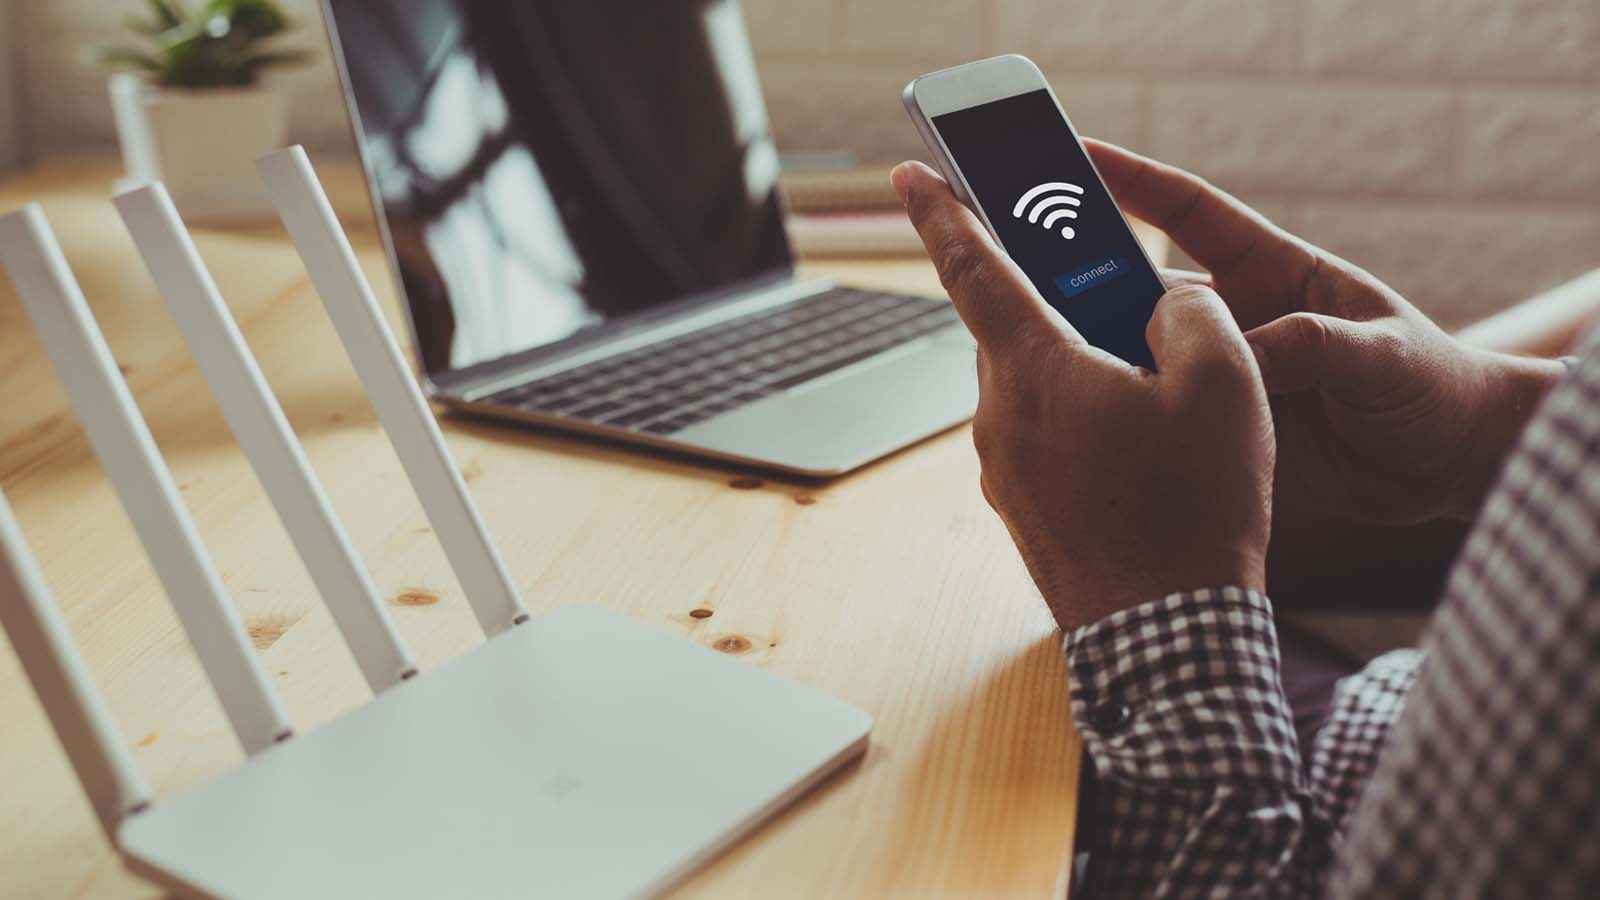  Le misure essenziali per evitare compromissioni della password del Wi-Fi e garantire la sicurezza online